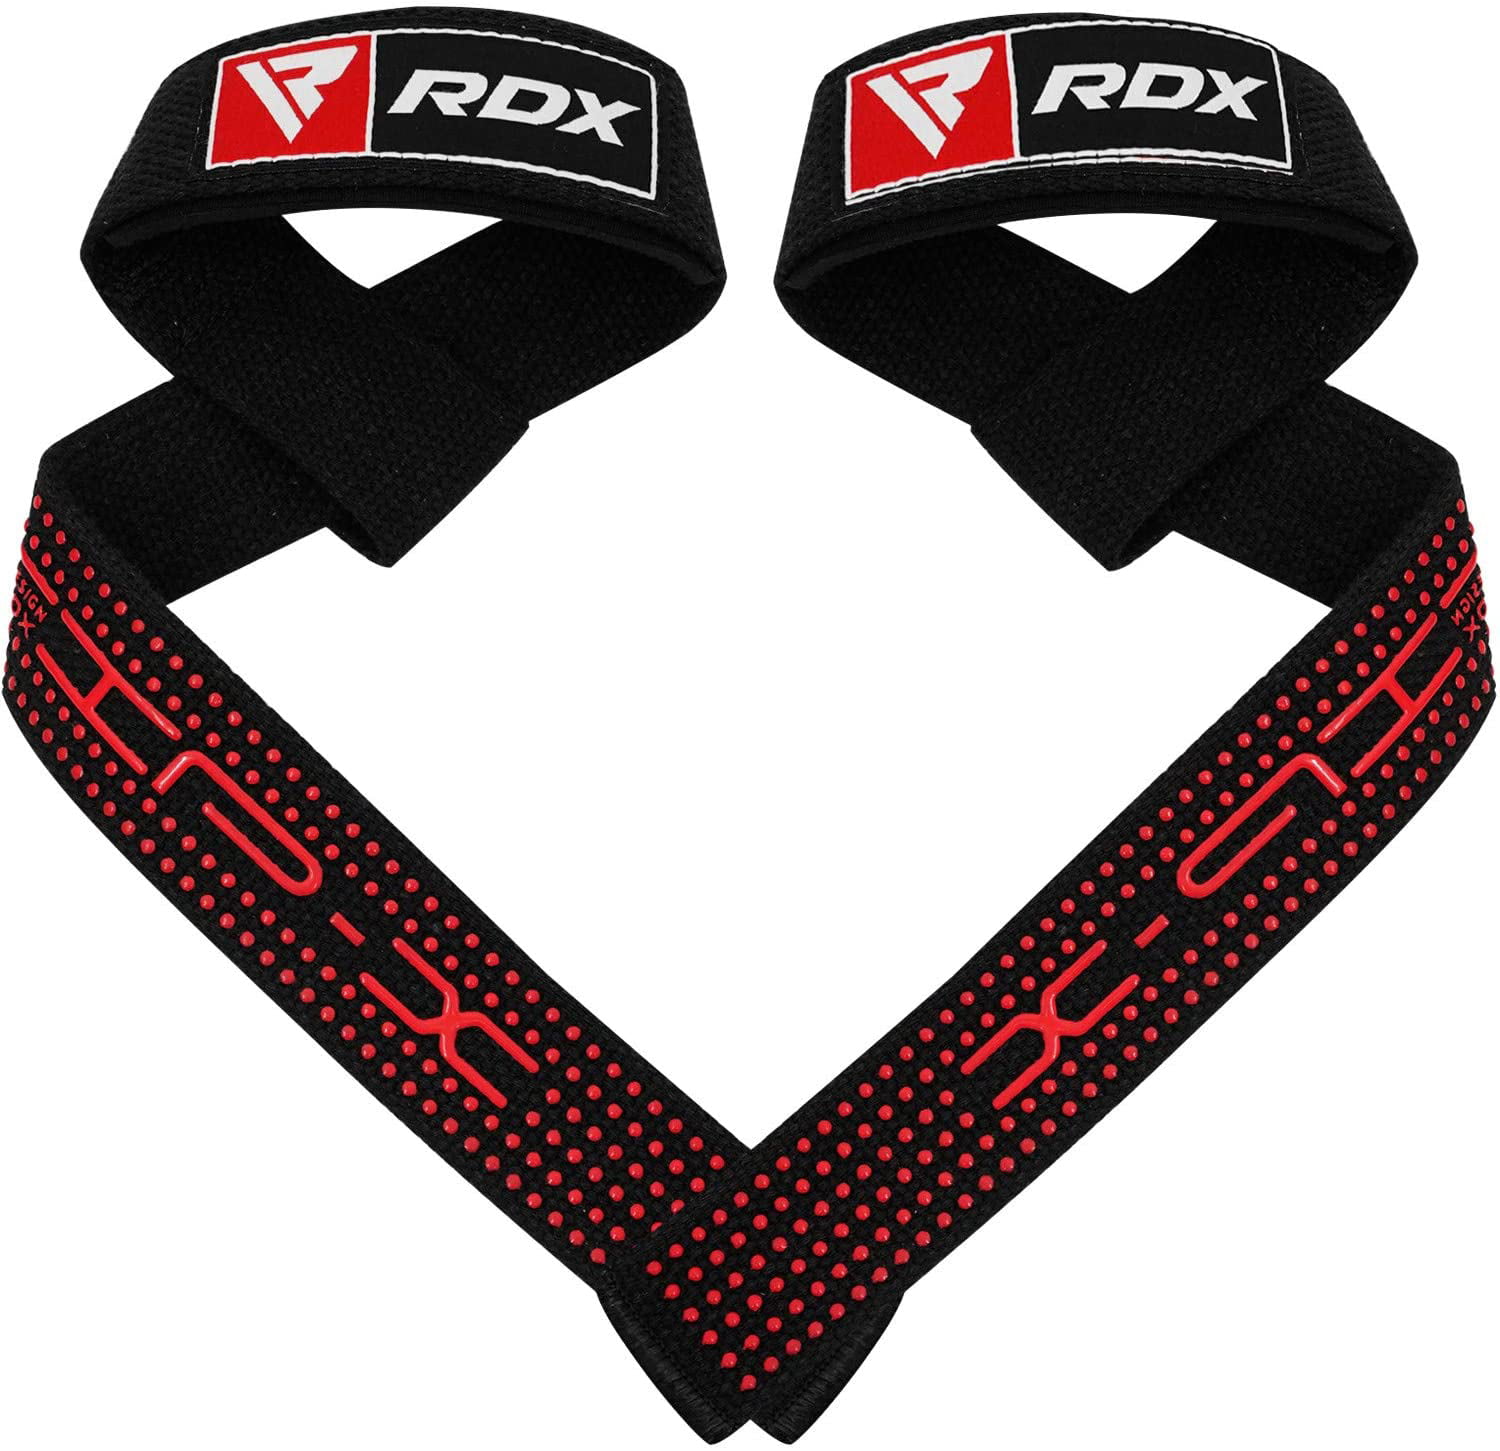 gym wrist straps rdx – Compra gym wrist straps rdx con envío gratis en  AliExpress version